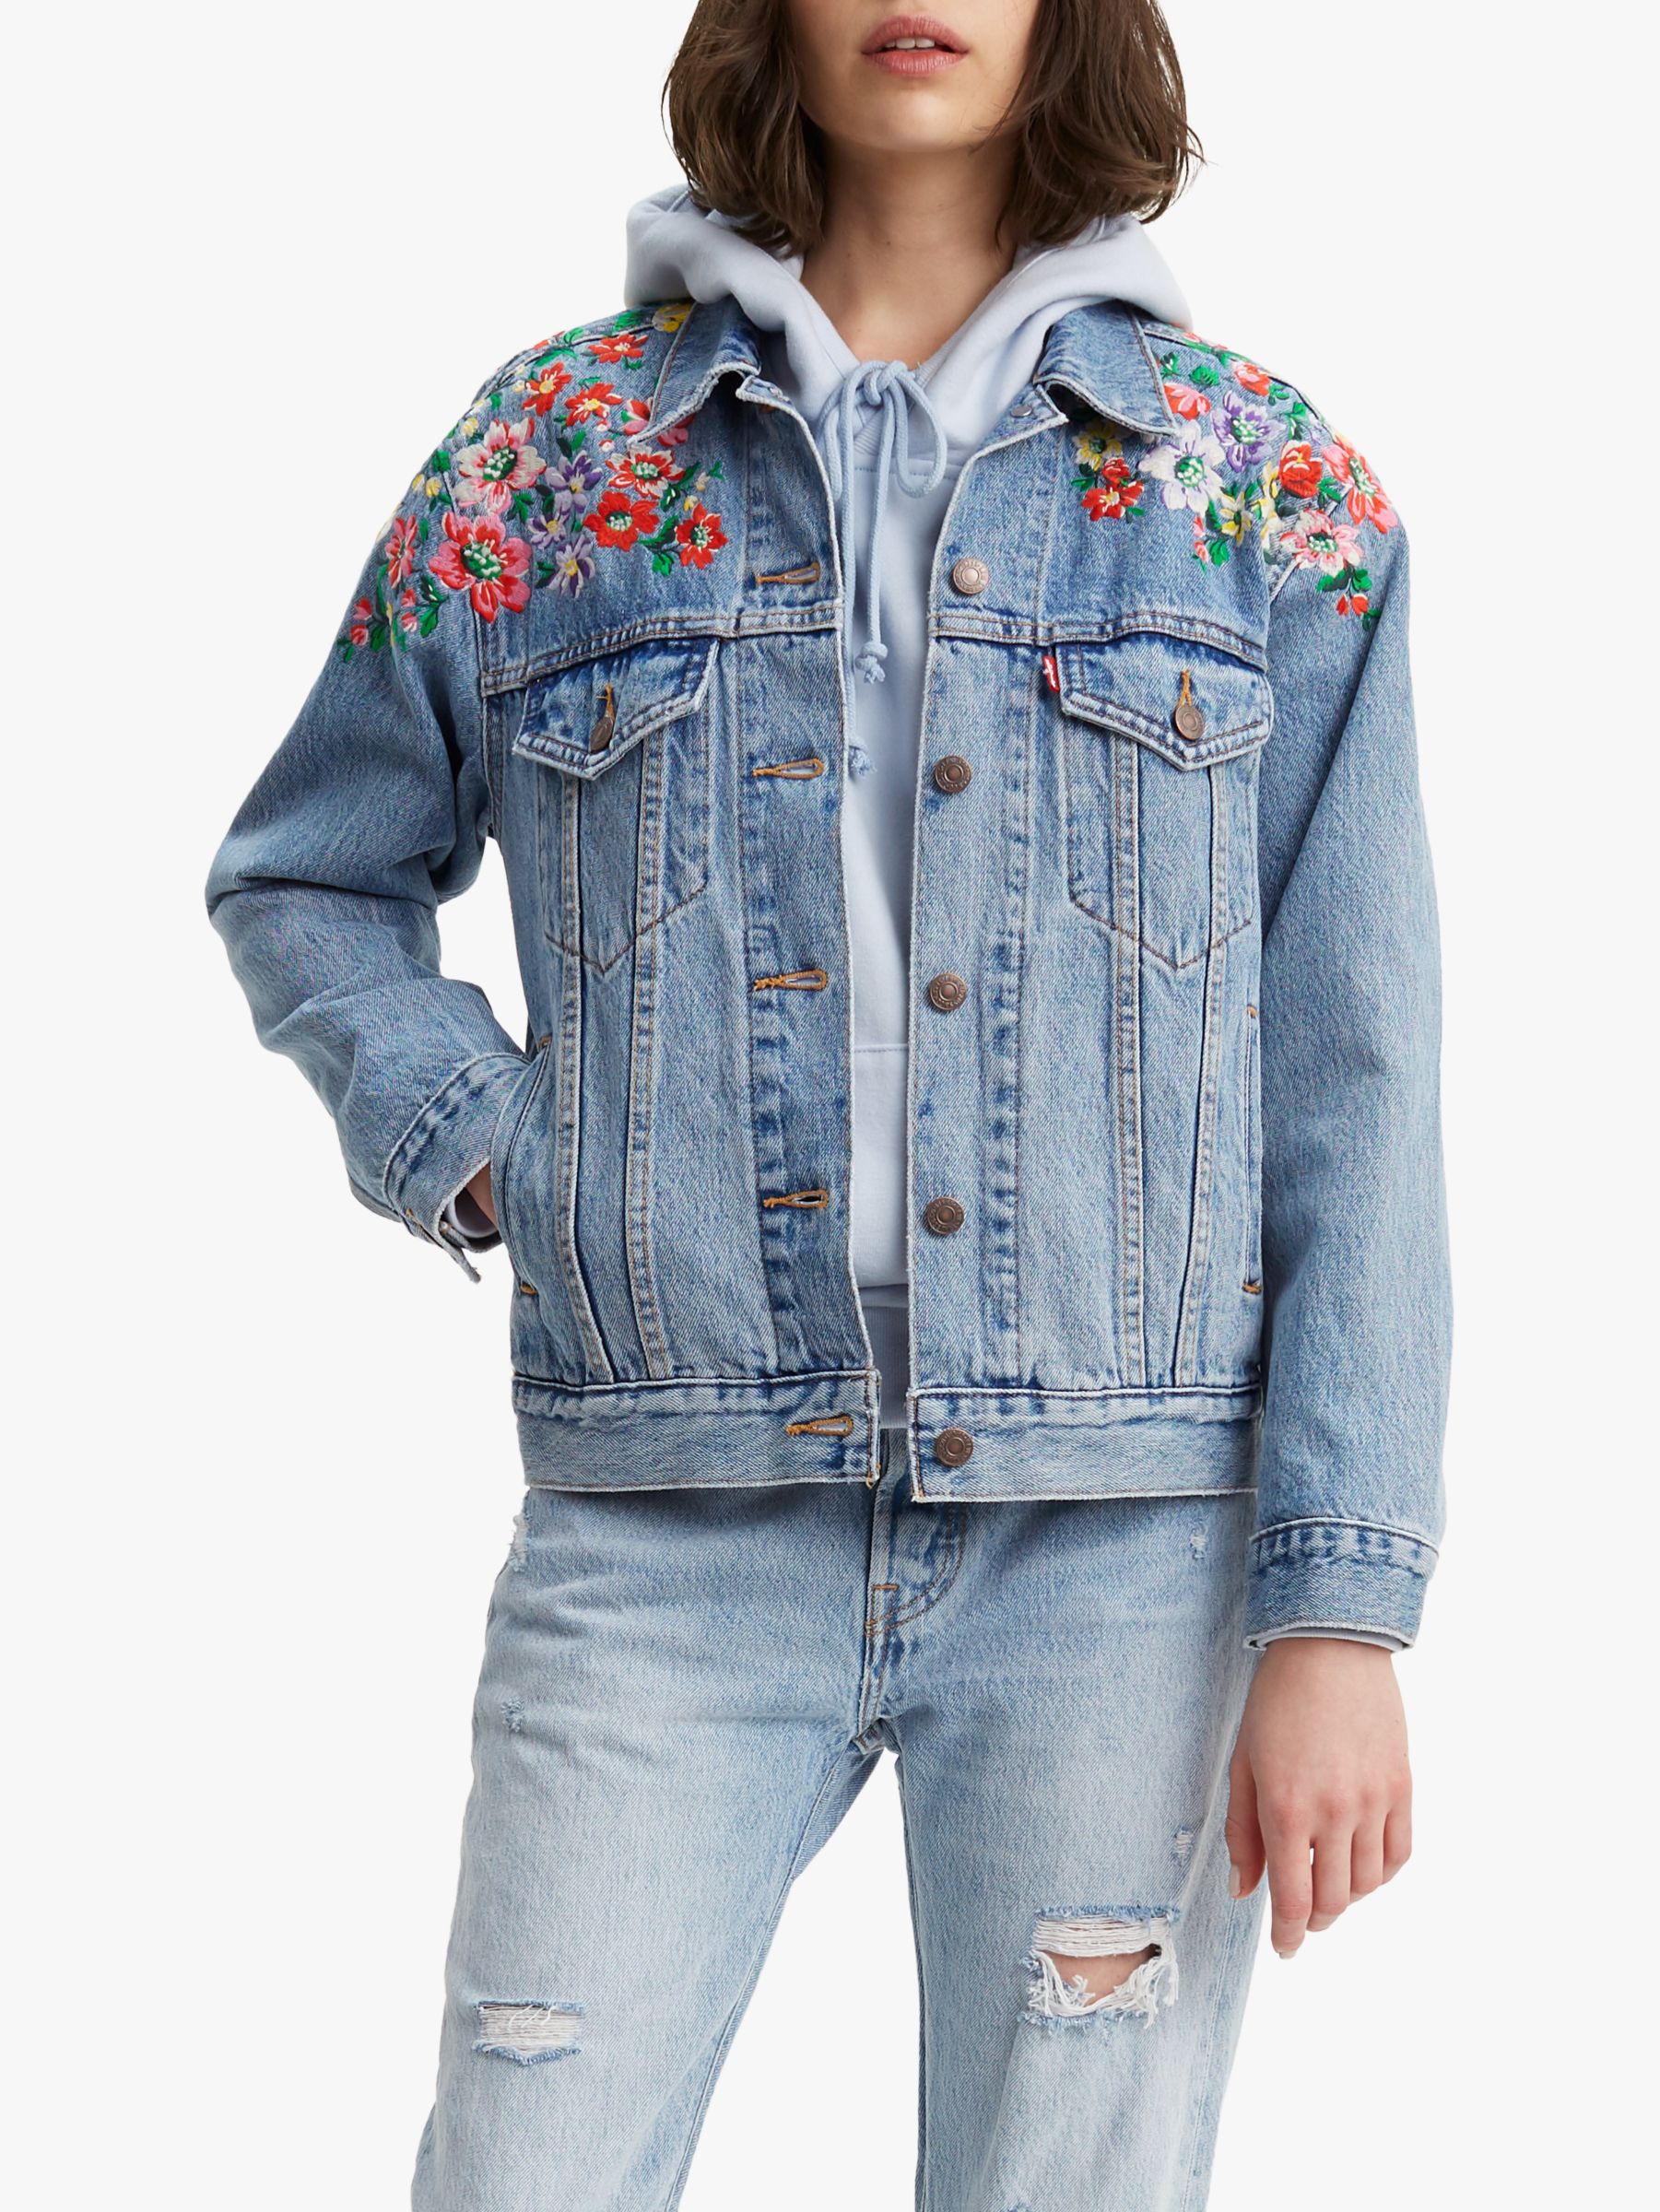 Top 72+ imagen levi’s floral embroidered jacket